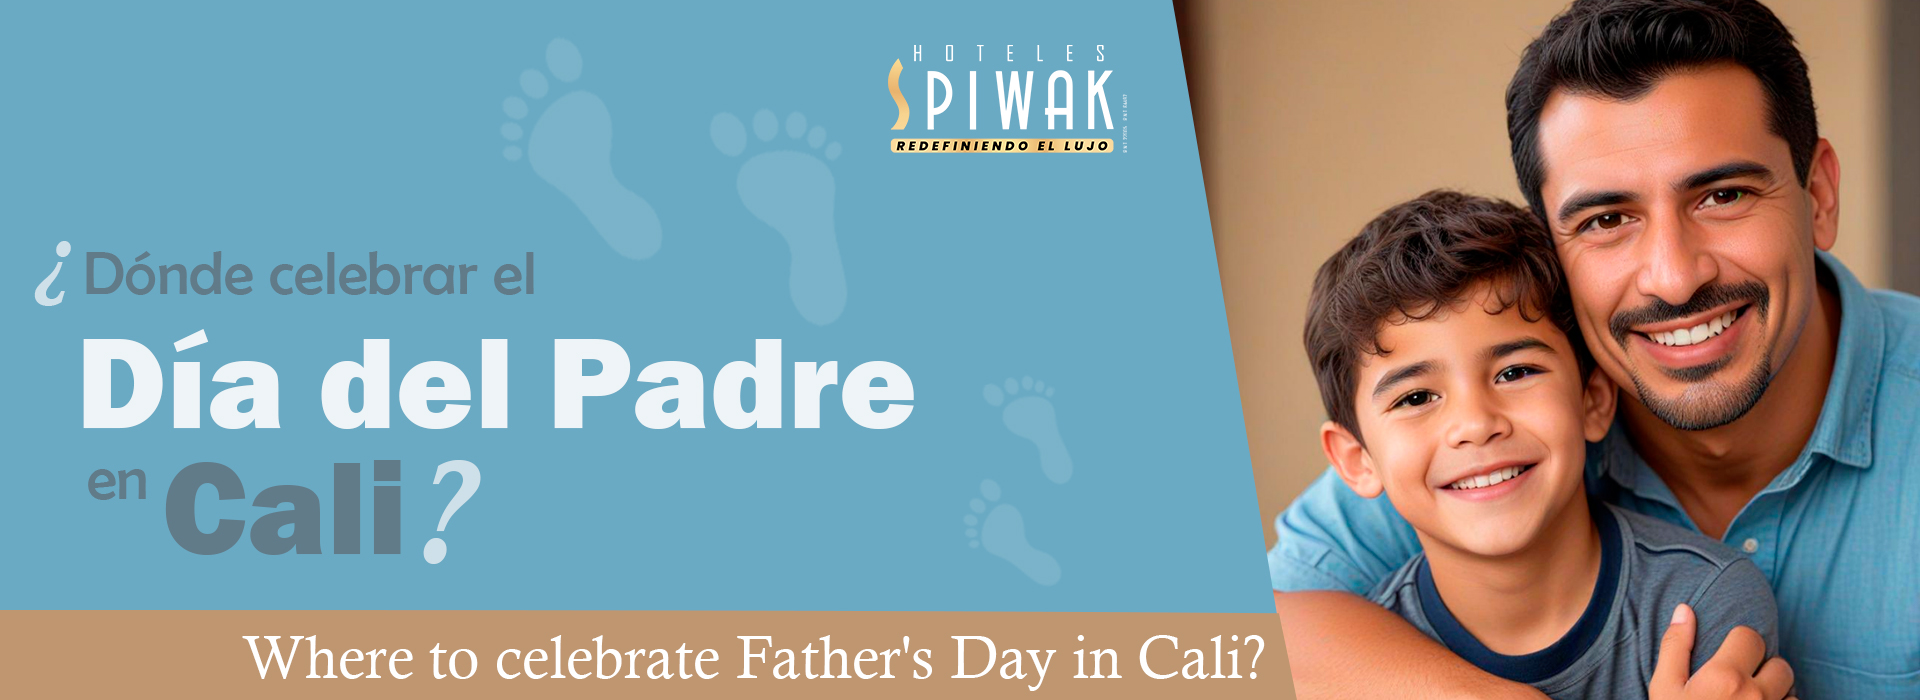 ¿Dónde celebrar el Día del Padre en Cali?